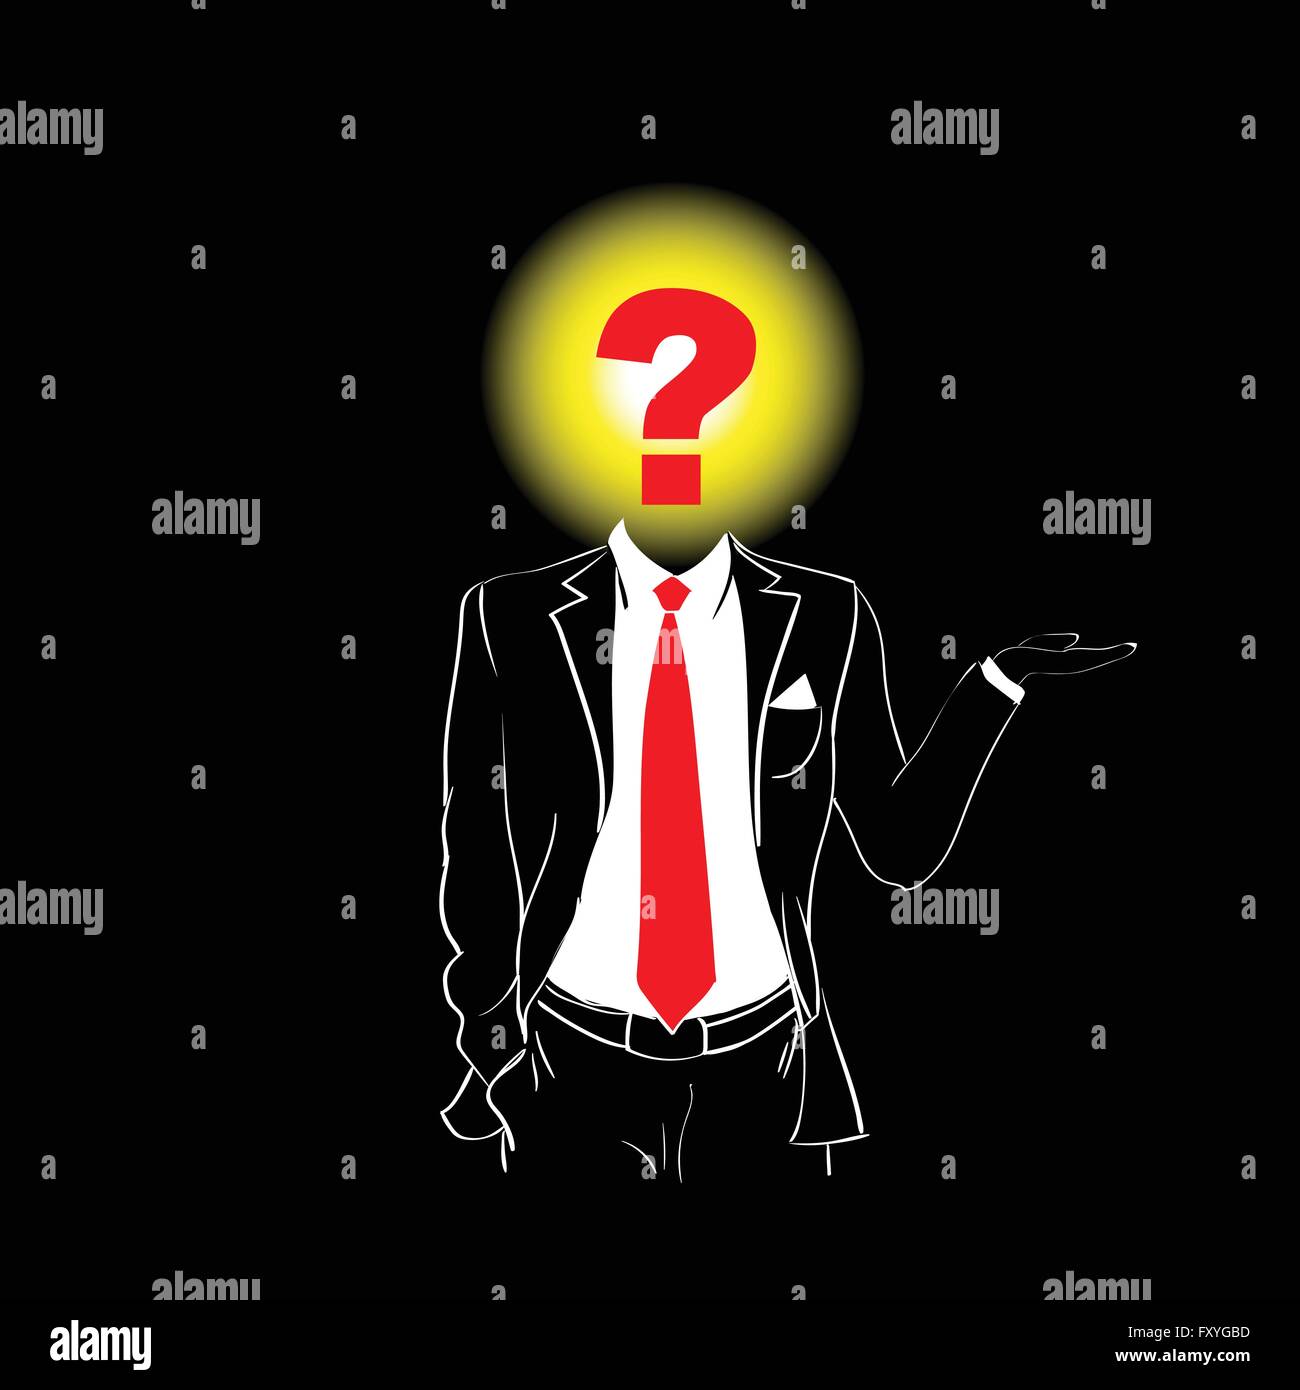 Nét lịch lãm của một người đàn ông đeo suit và cà vạt đỏ được nói lên bởi biểu tượng dấu hỏi trên đầu trên nền đen. Một hình ảnh đầy quyến rũ và bí ẩn đang chờ bạn khám phá.